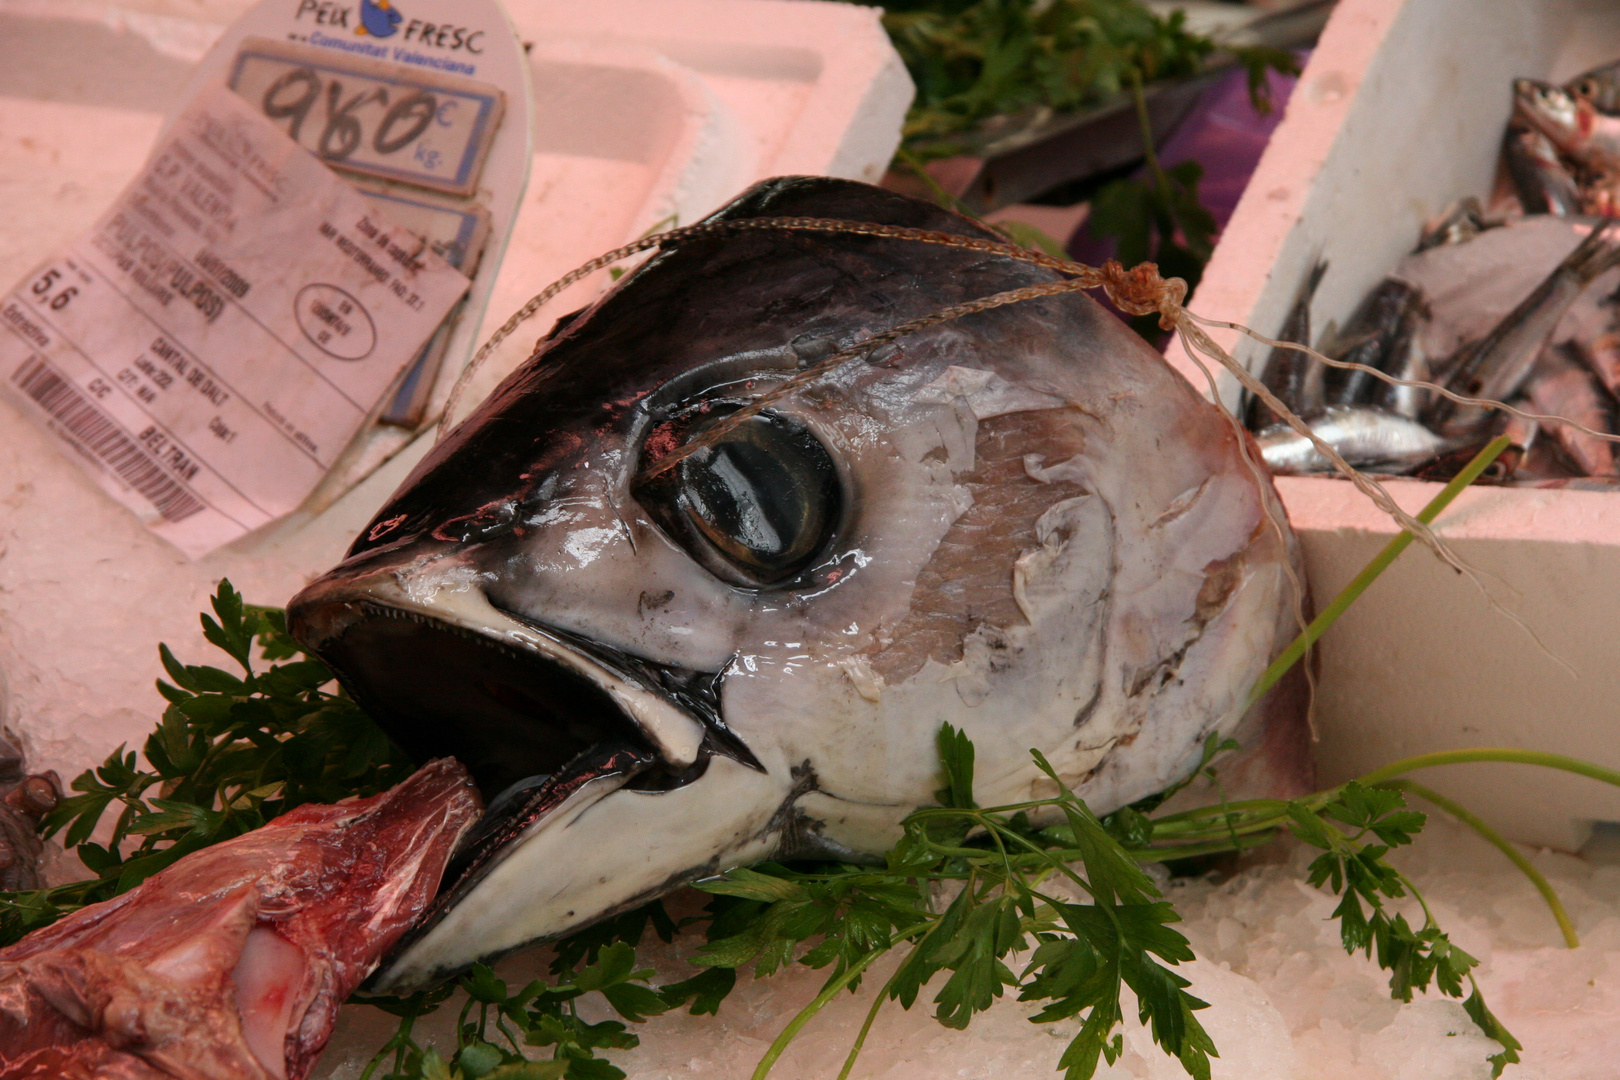 Fisch in der Markthalle Valencia (Mercado Central) im Juli 2009